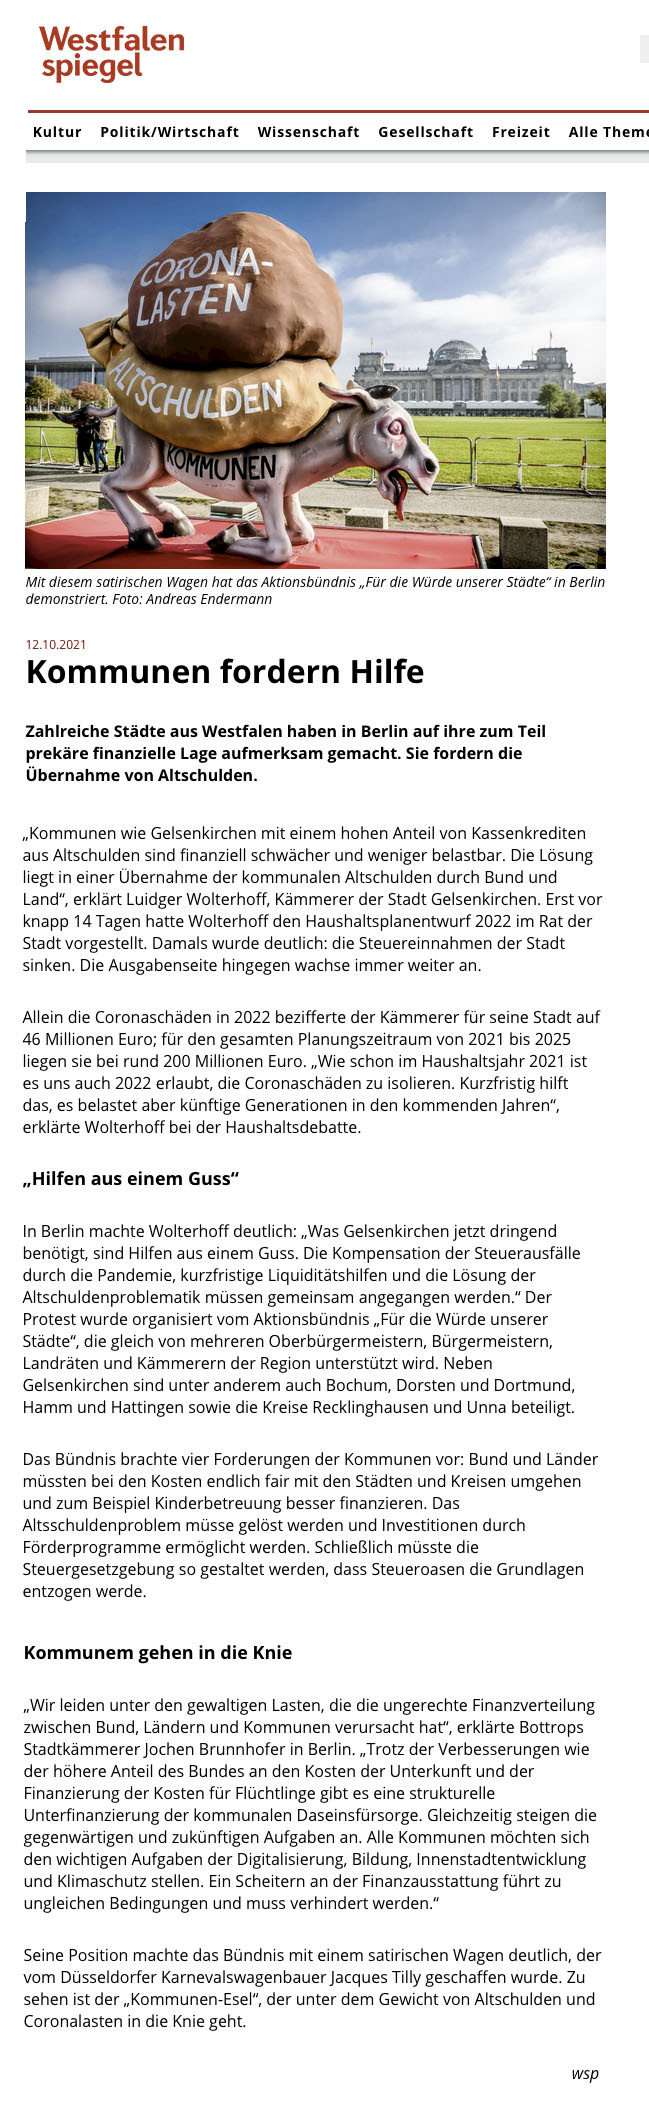 Westfalenspiegel, 12.10.2021 [https://www.westfalenspiegel.de/kommunen-fordern-hilfe/]